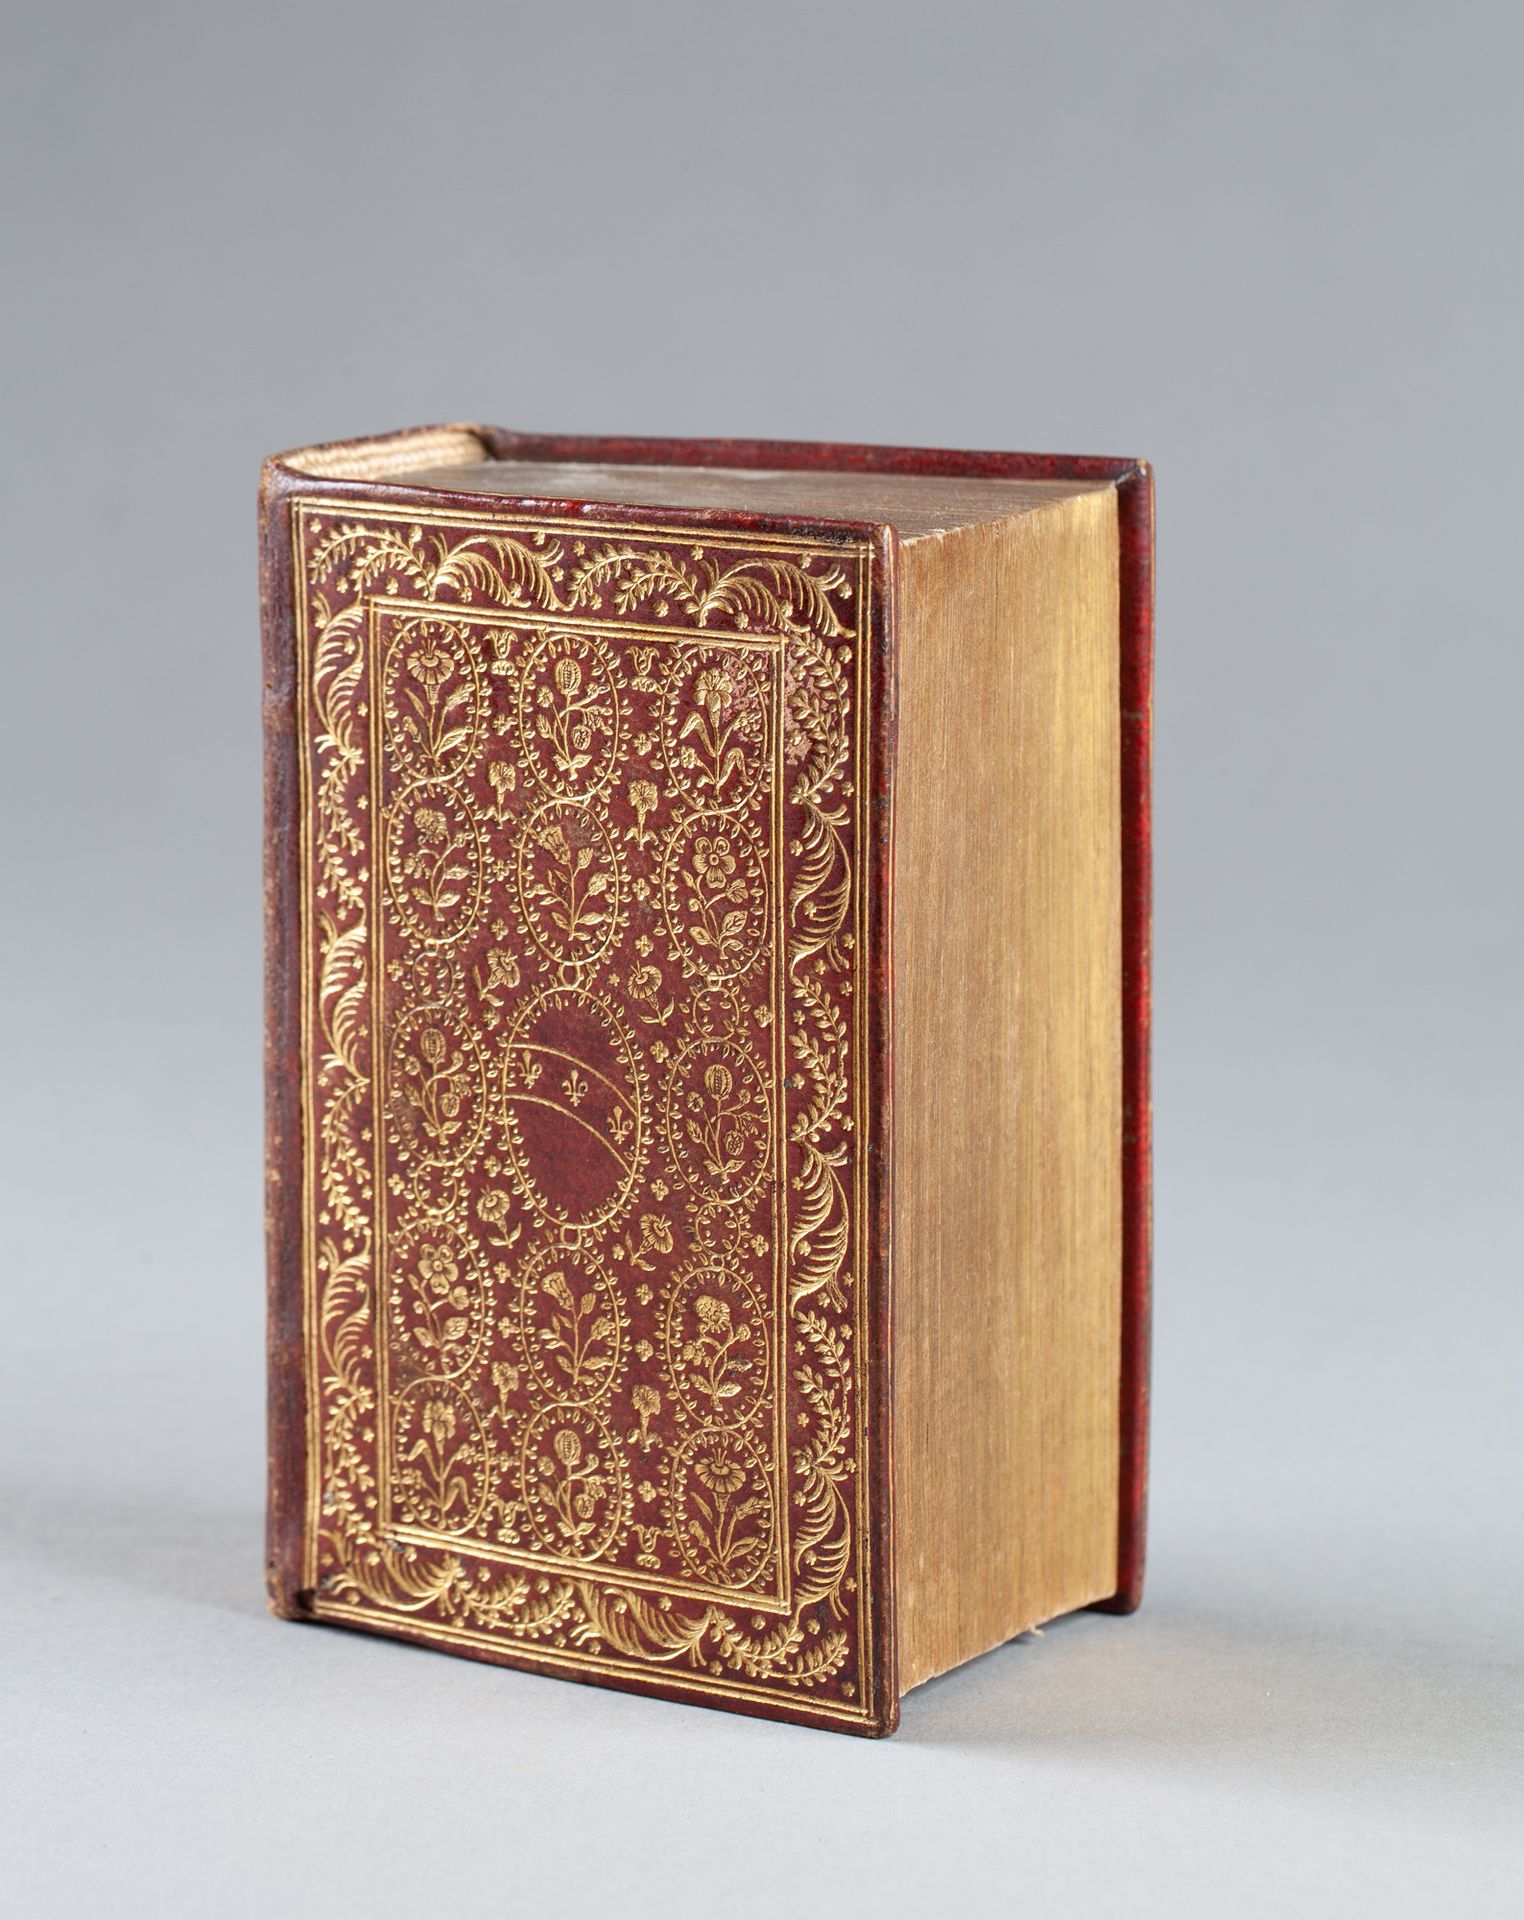 FLAVIUS JOSEPHE. 歌剧。日内瓦]，雅各布-斯托尔，1595年。16开本，红色摩洛哥，在书板和书脊上镶有叶子的边框，字段被一个大的椭圆形叶子徽章占&hellip;